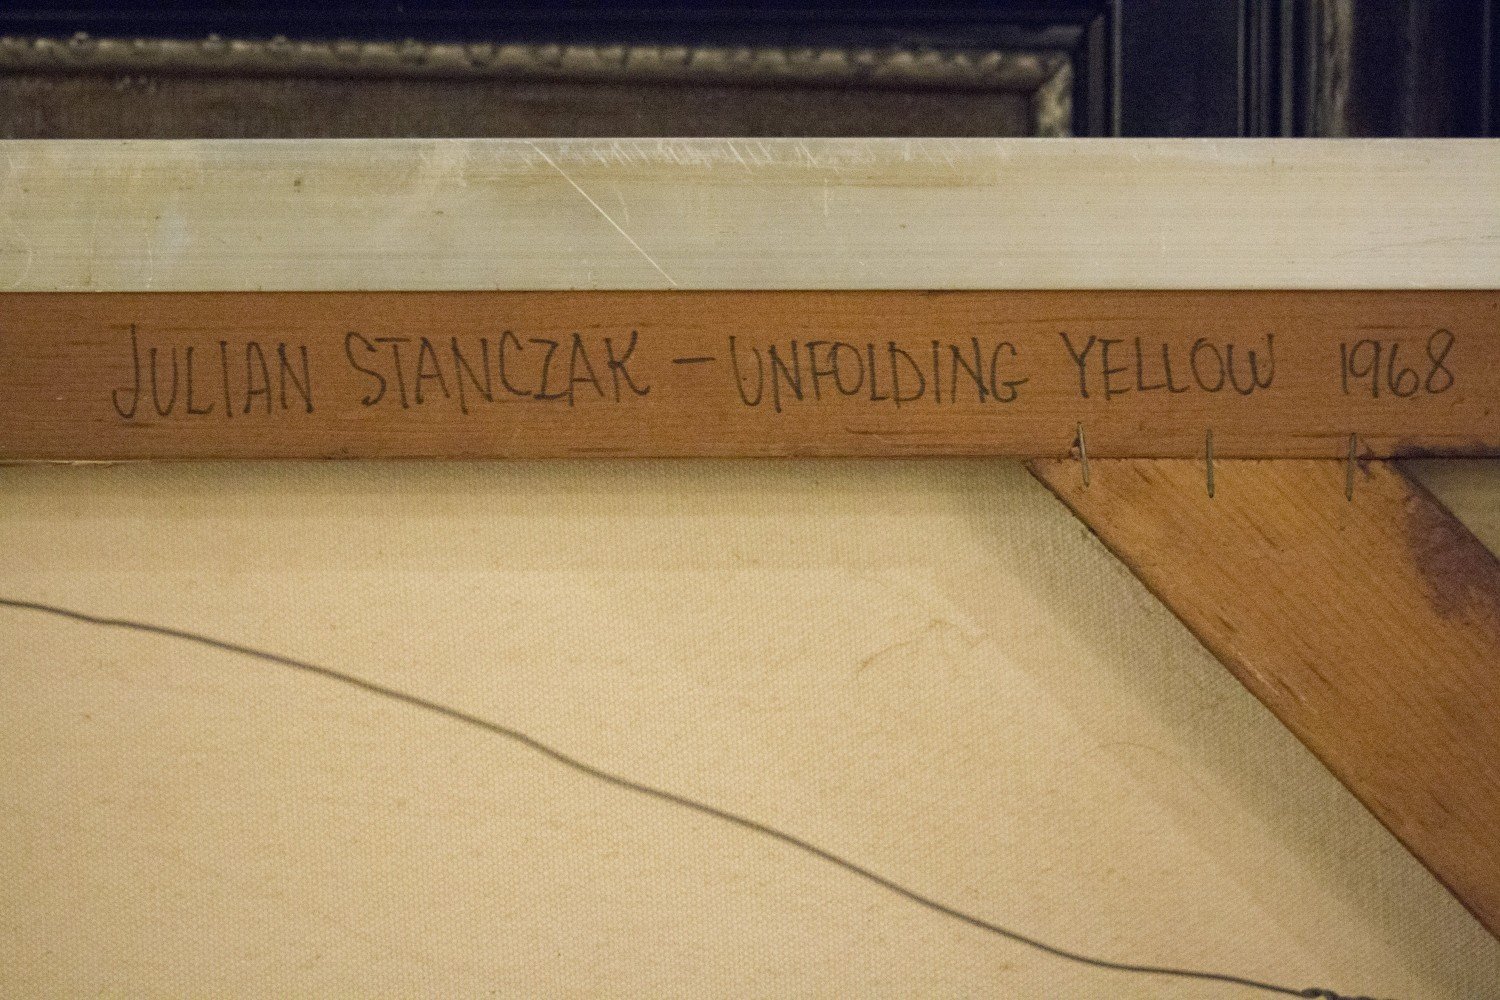 Unfolding Yellow by Julian Stanczak